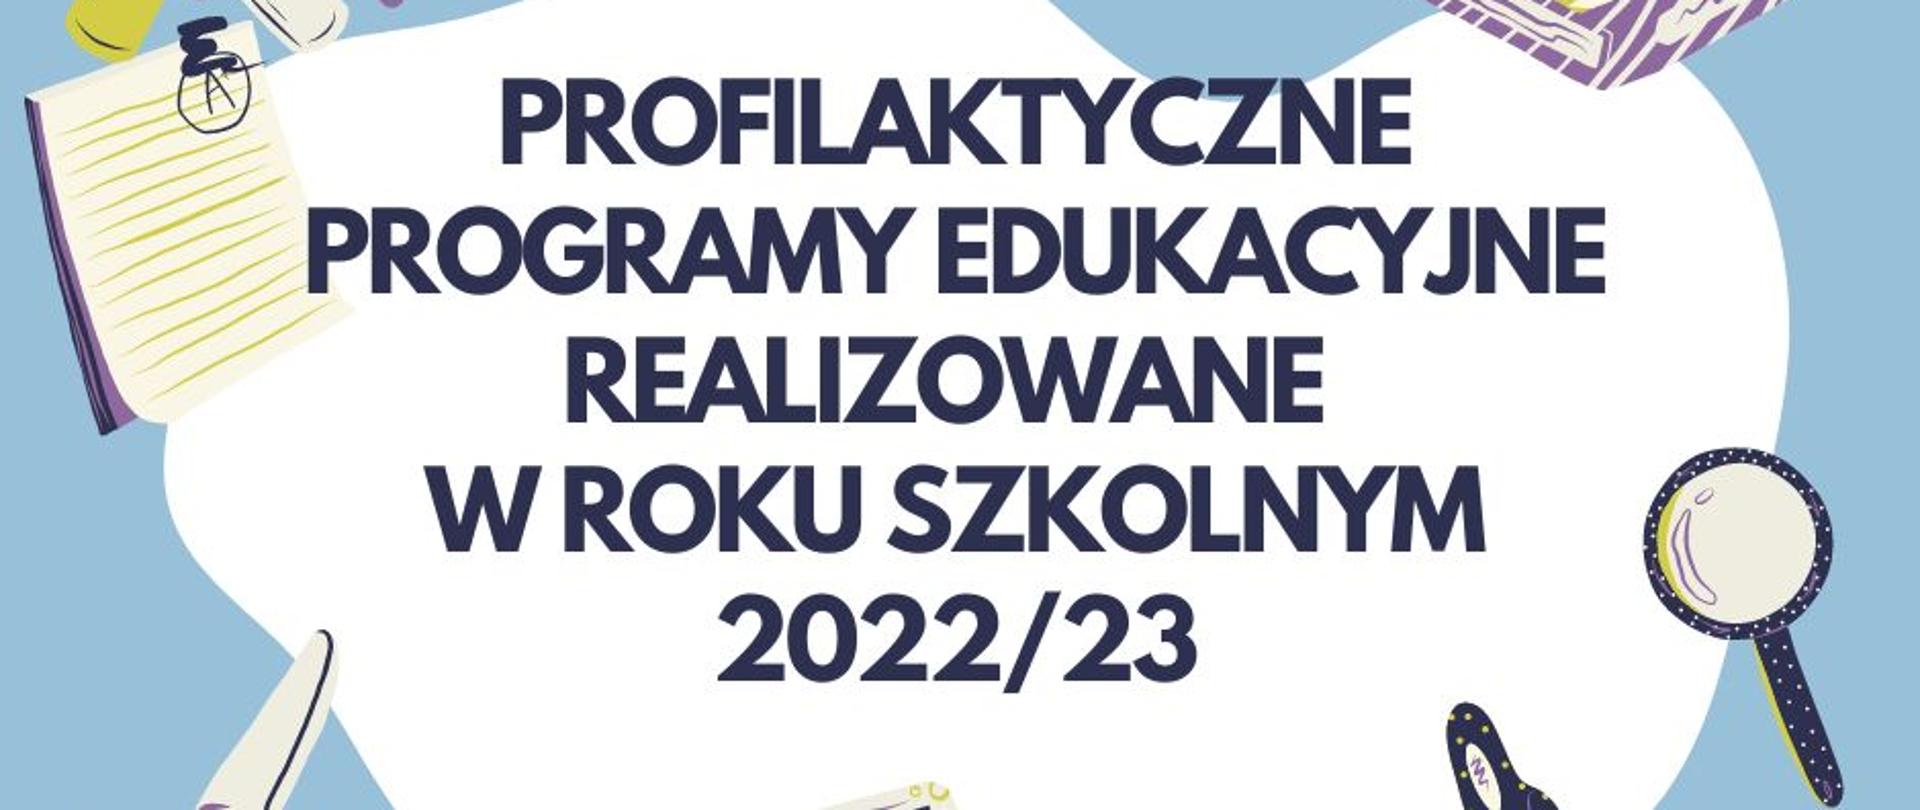 Profilaktyczne programy edukacyjne w roku szkolnym 2022/23